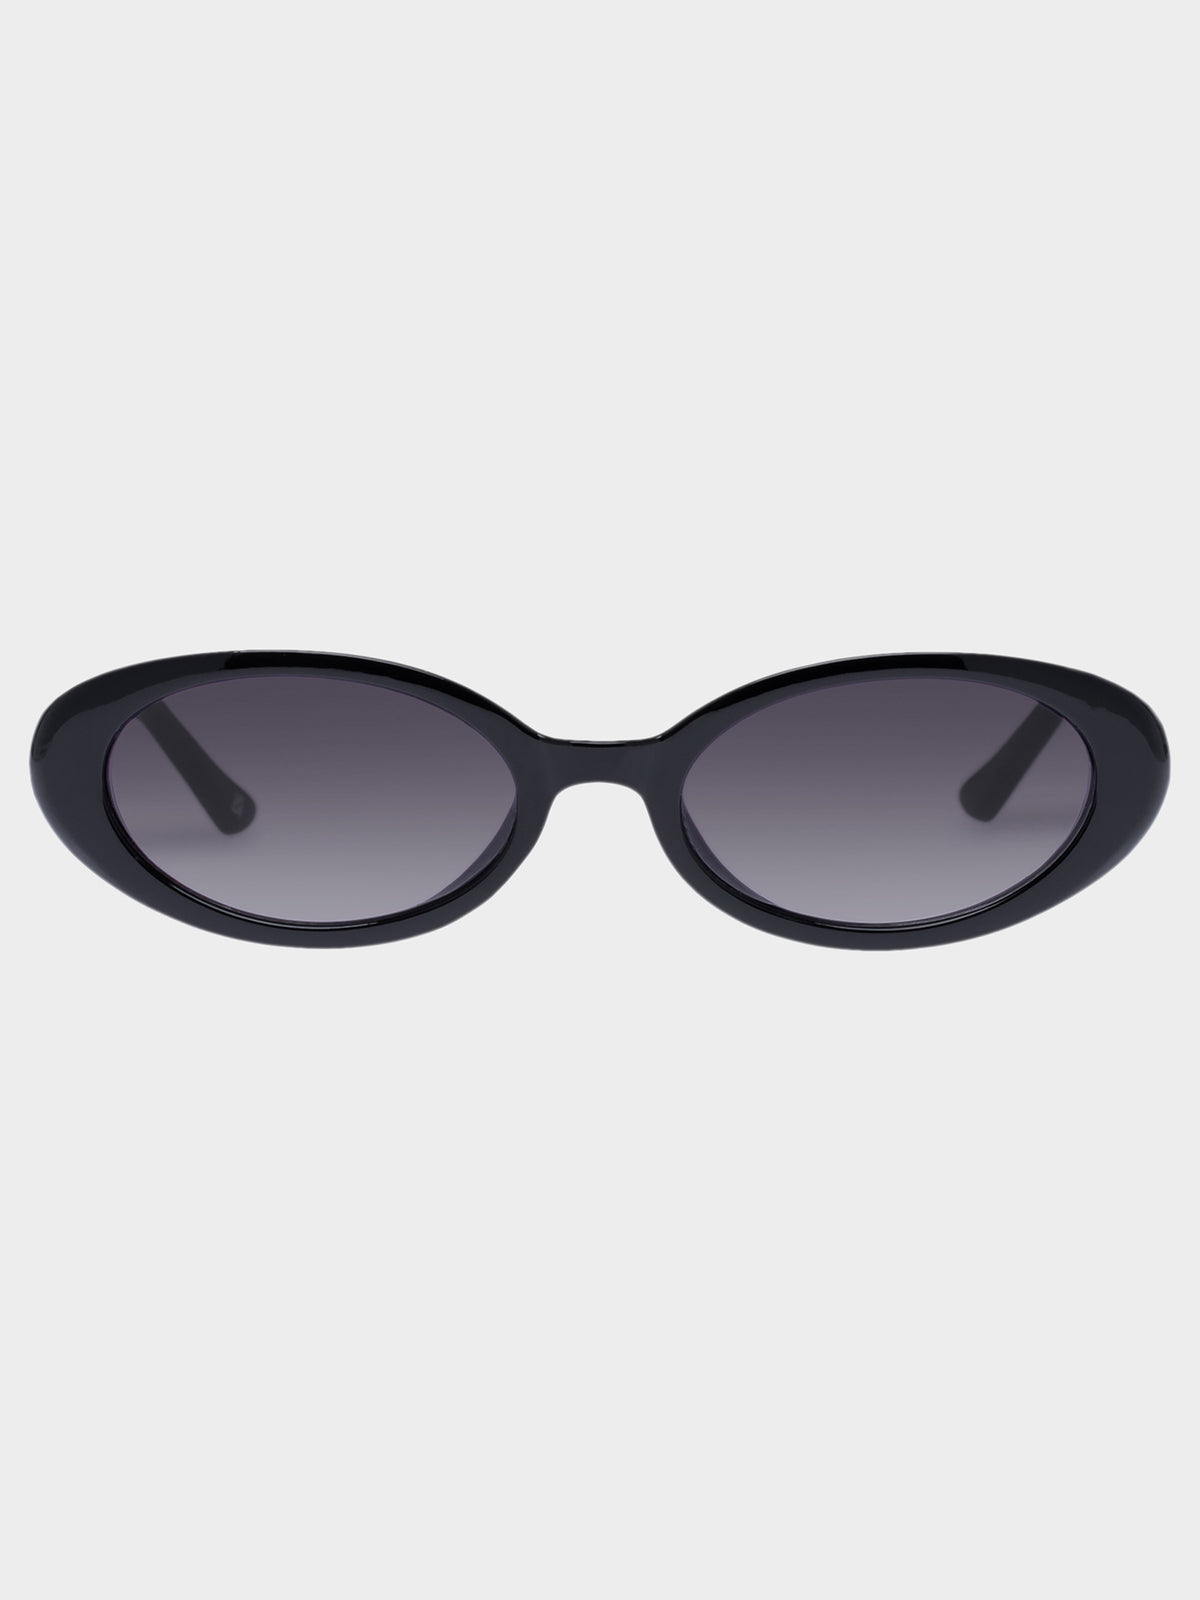 Fornax Sunglasses in Black Cool Smoke Grad